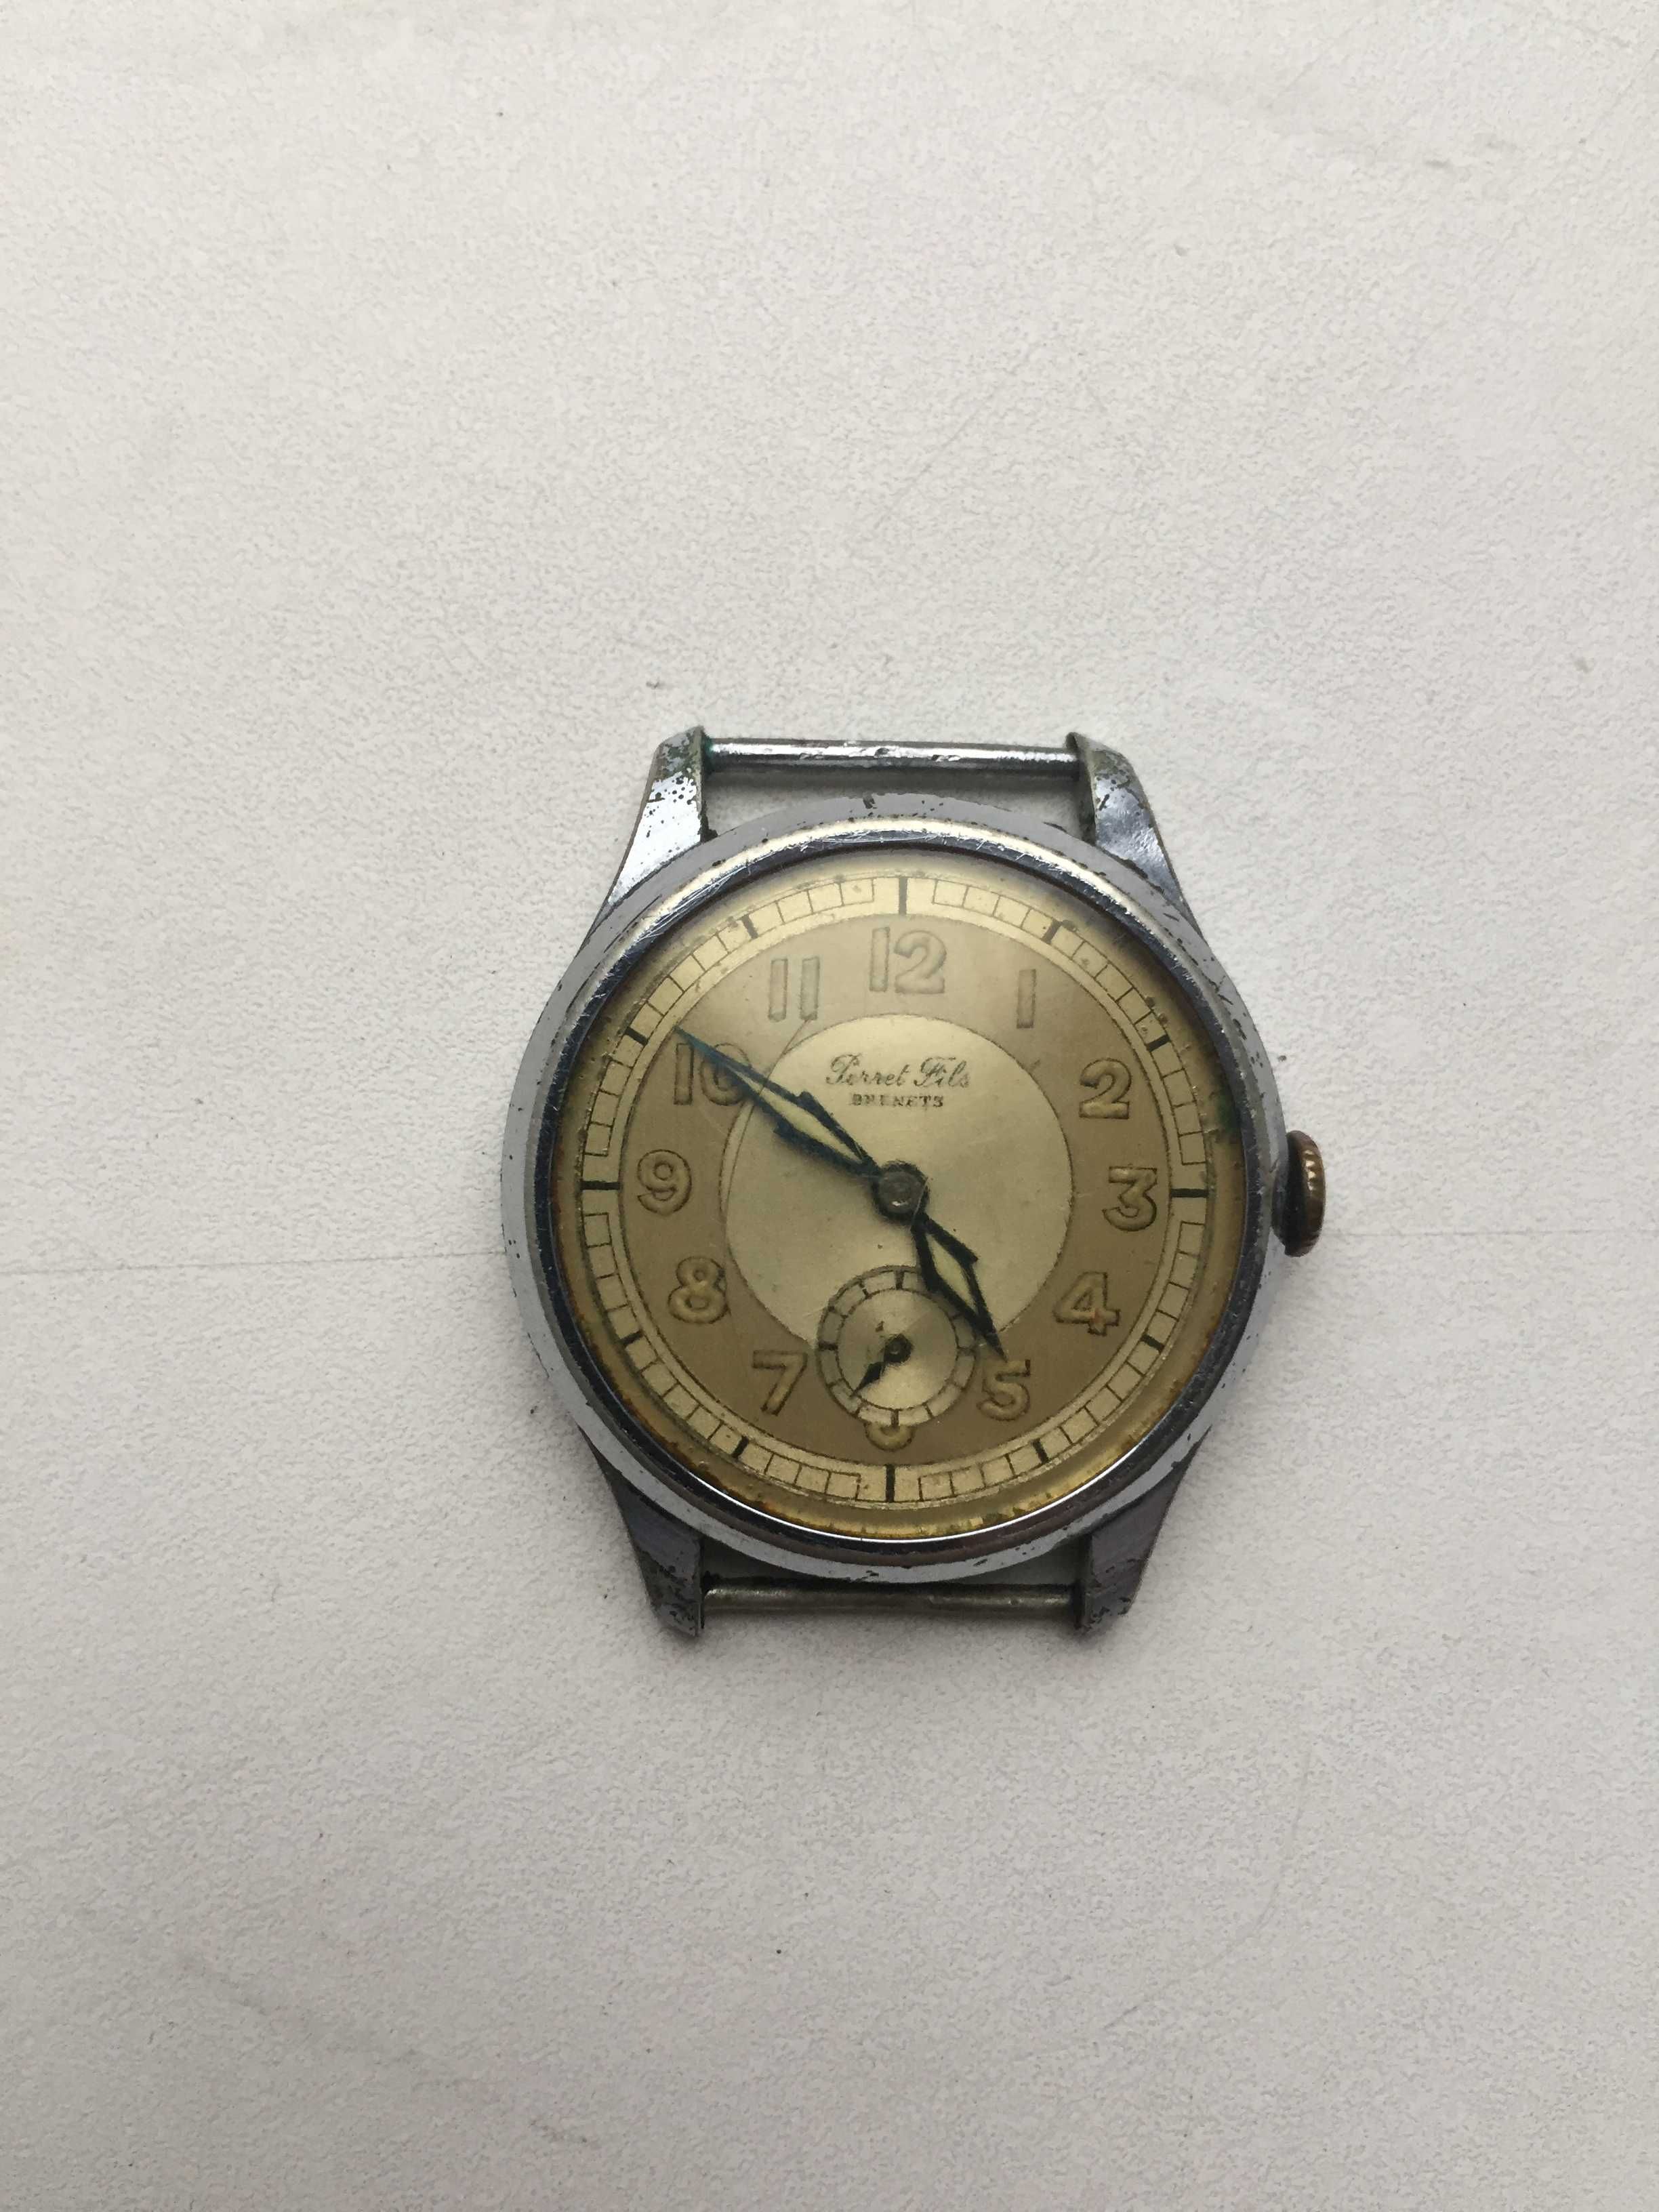 Швейцарские наручные часы Perret Fils Brunettes 1940-50гг